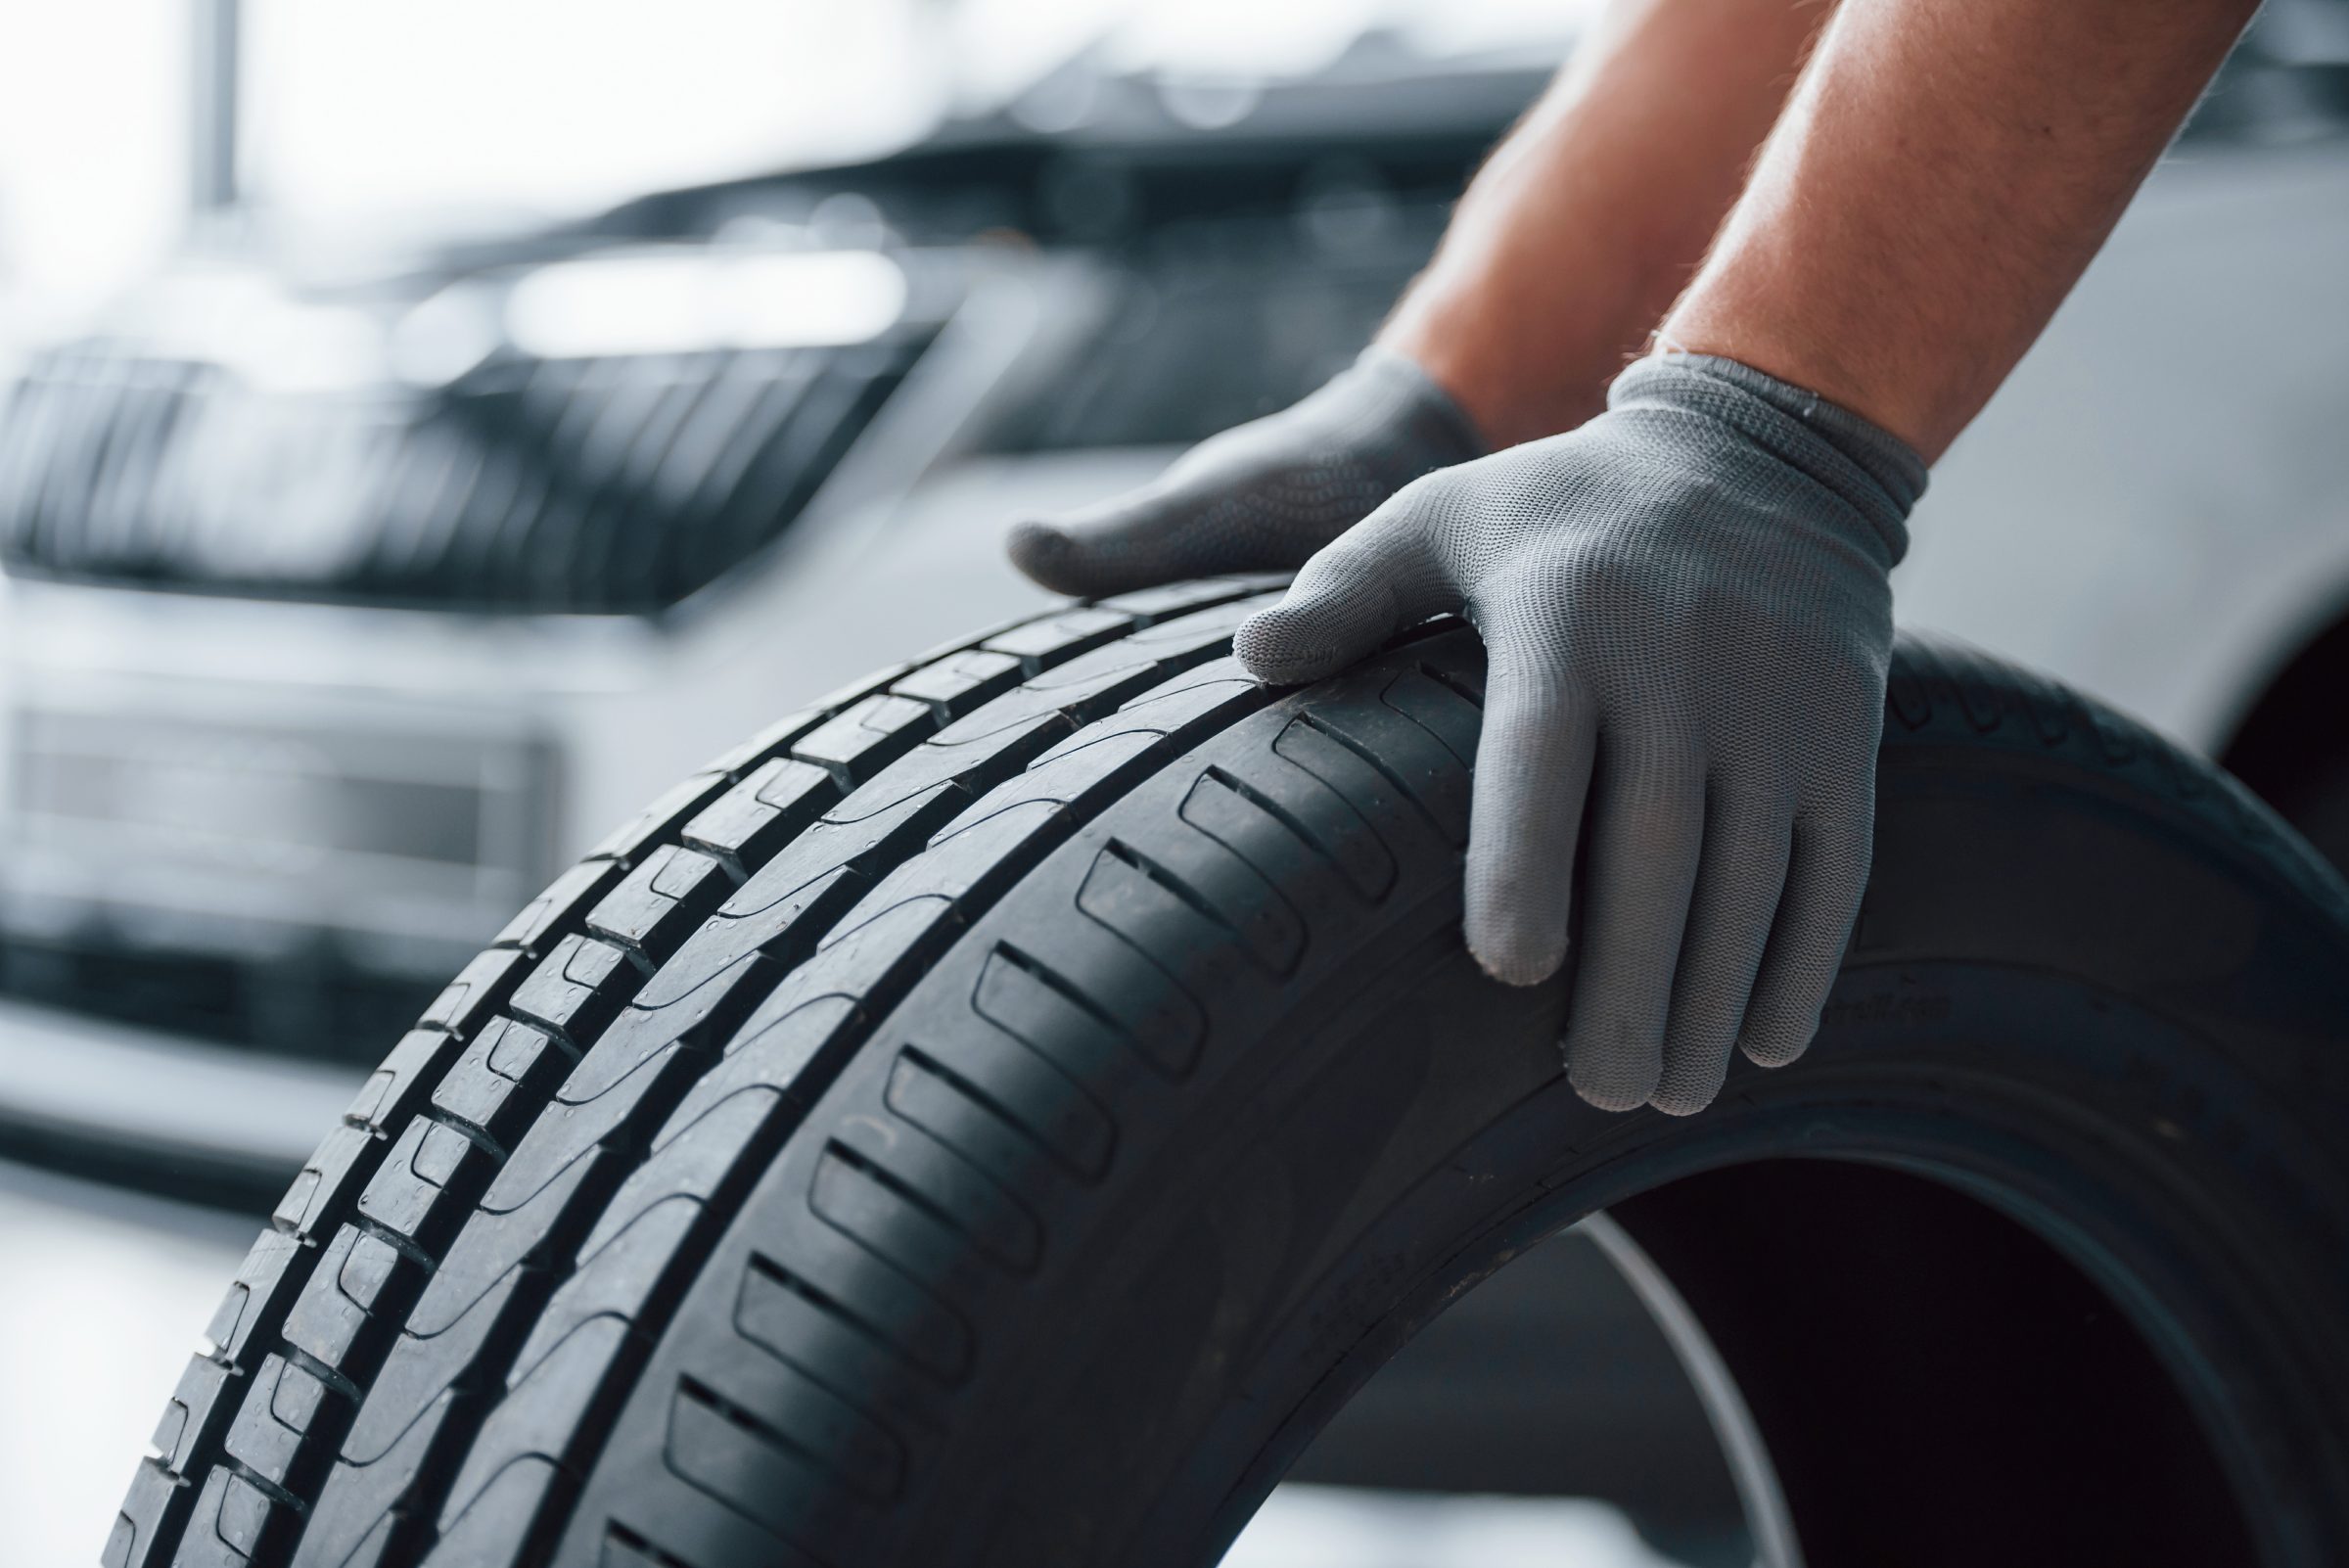 Você sabia que os pneus de carros elétricos necessitam de tecnologias especiais? Ele devem ser mais silenciosos e suportar mais peso